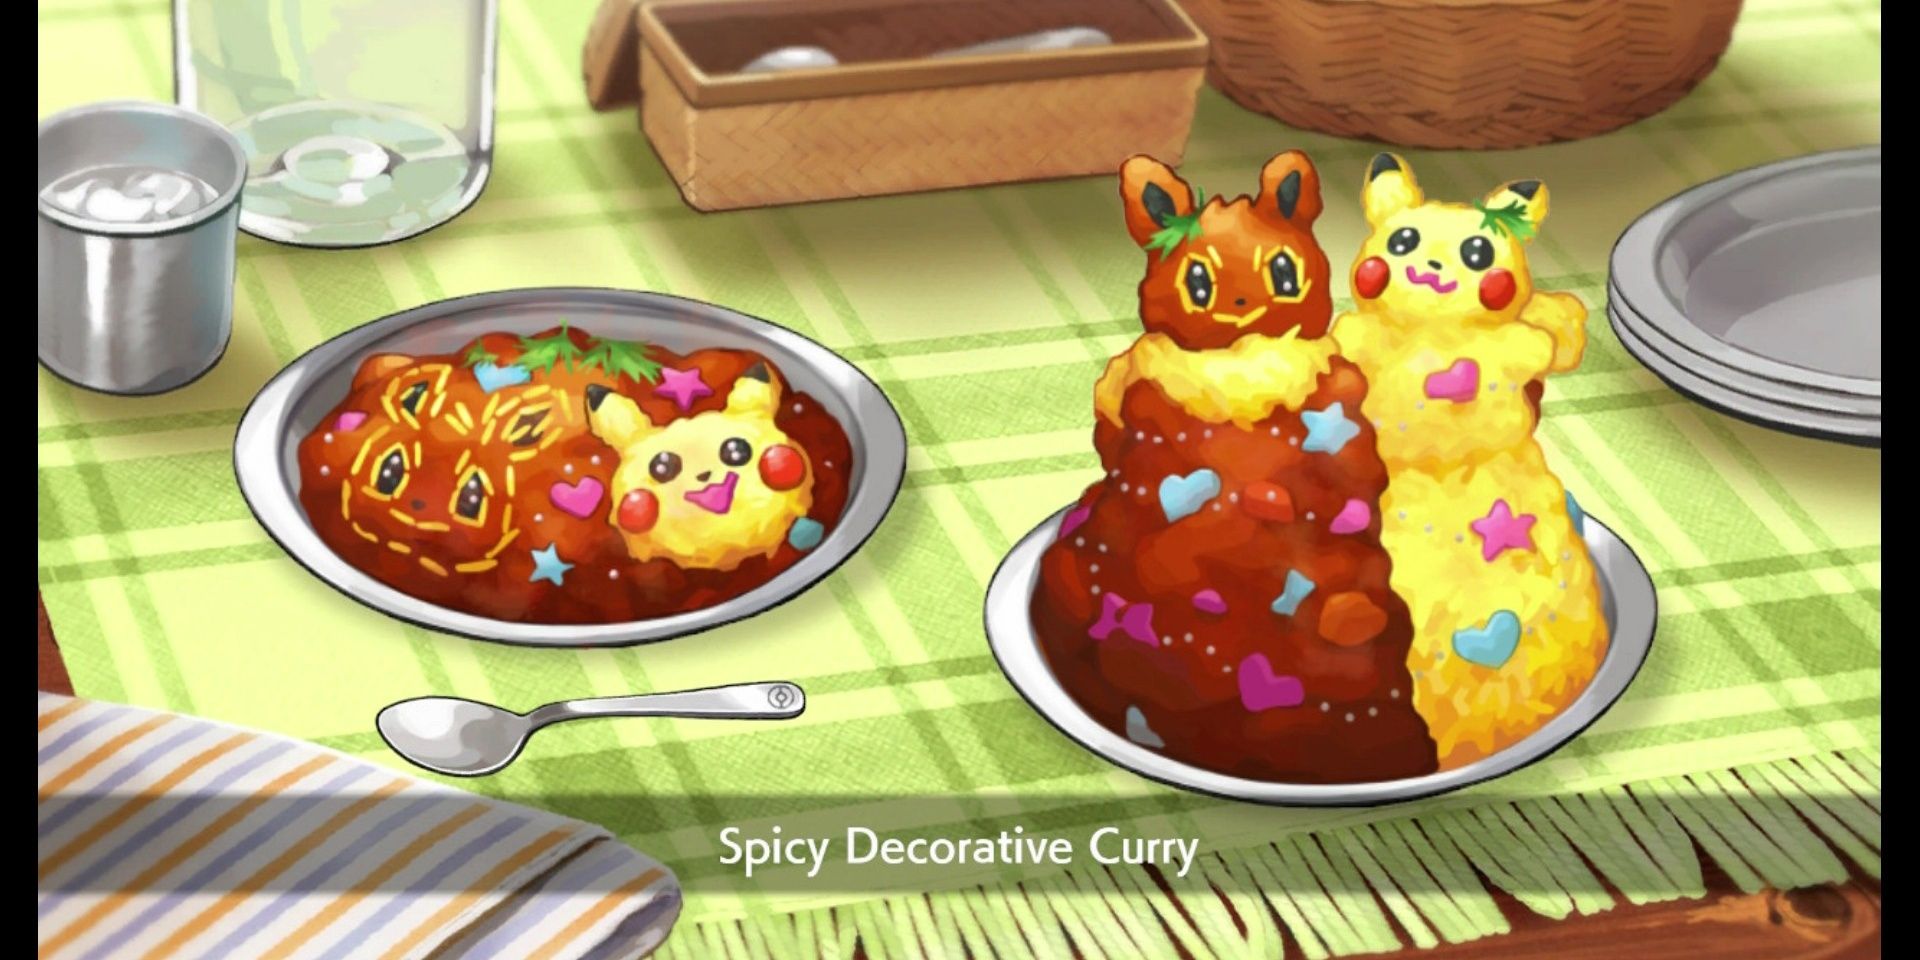 Curry decorativo picante de Pokemon Sword and Shield